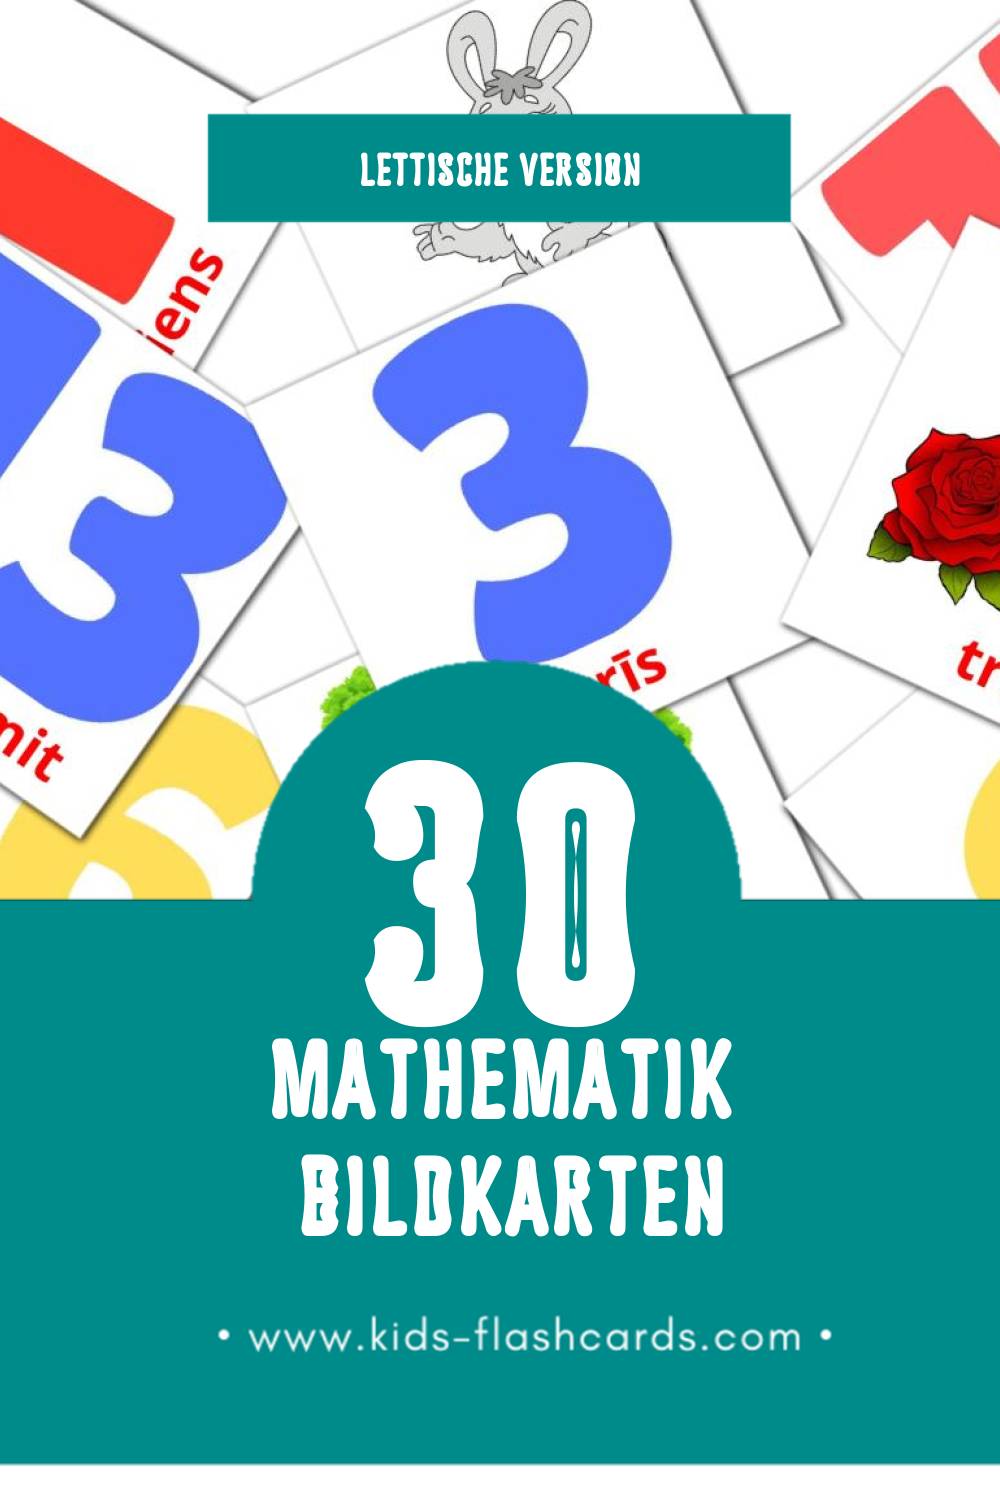 Visual Matemātika Flashcards für Kleinkinder (30 Karten in Lettisch)